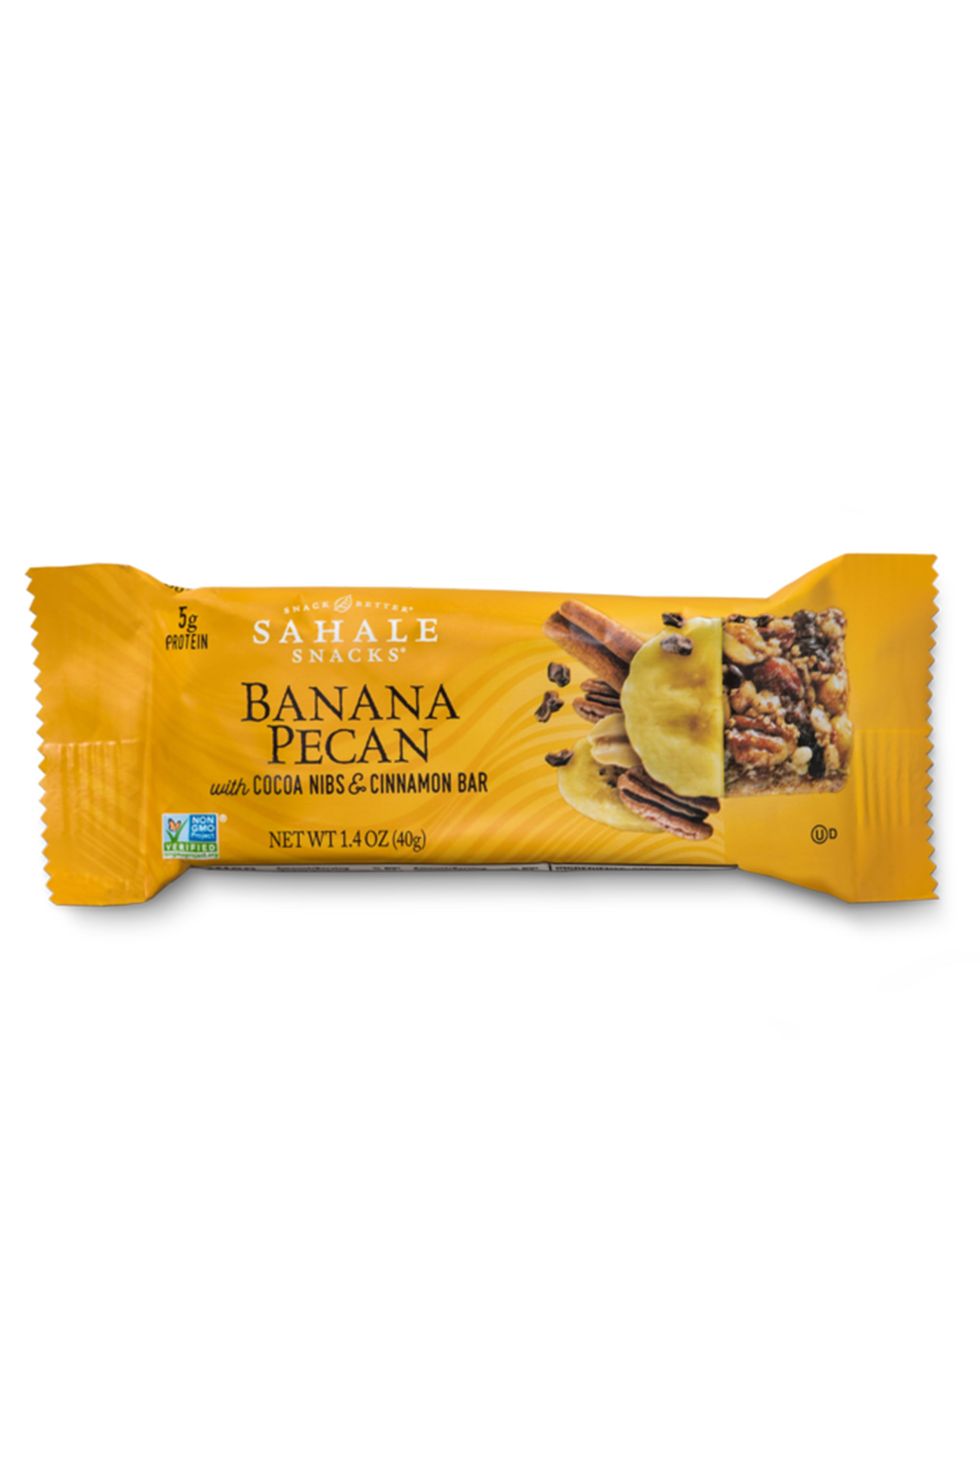 Sahale Snacks Banana Pecan Bars